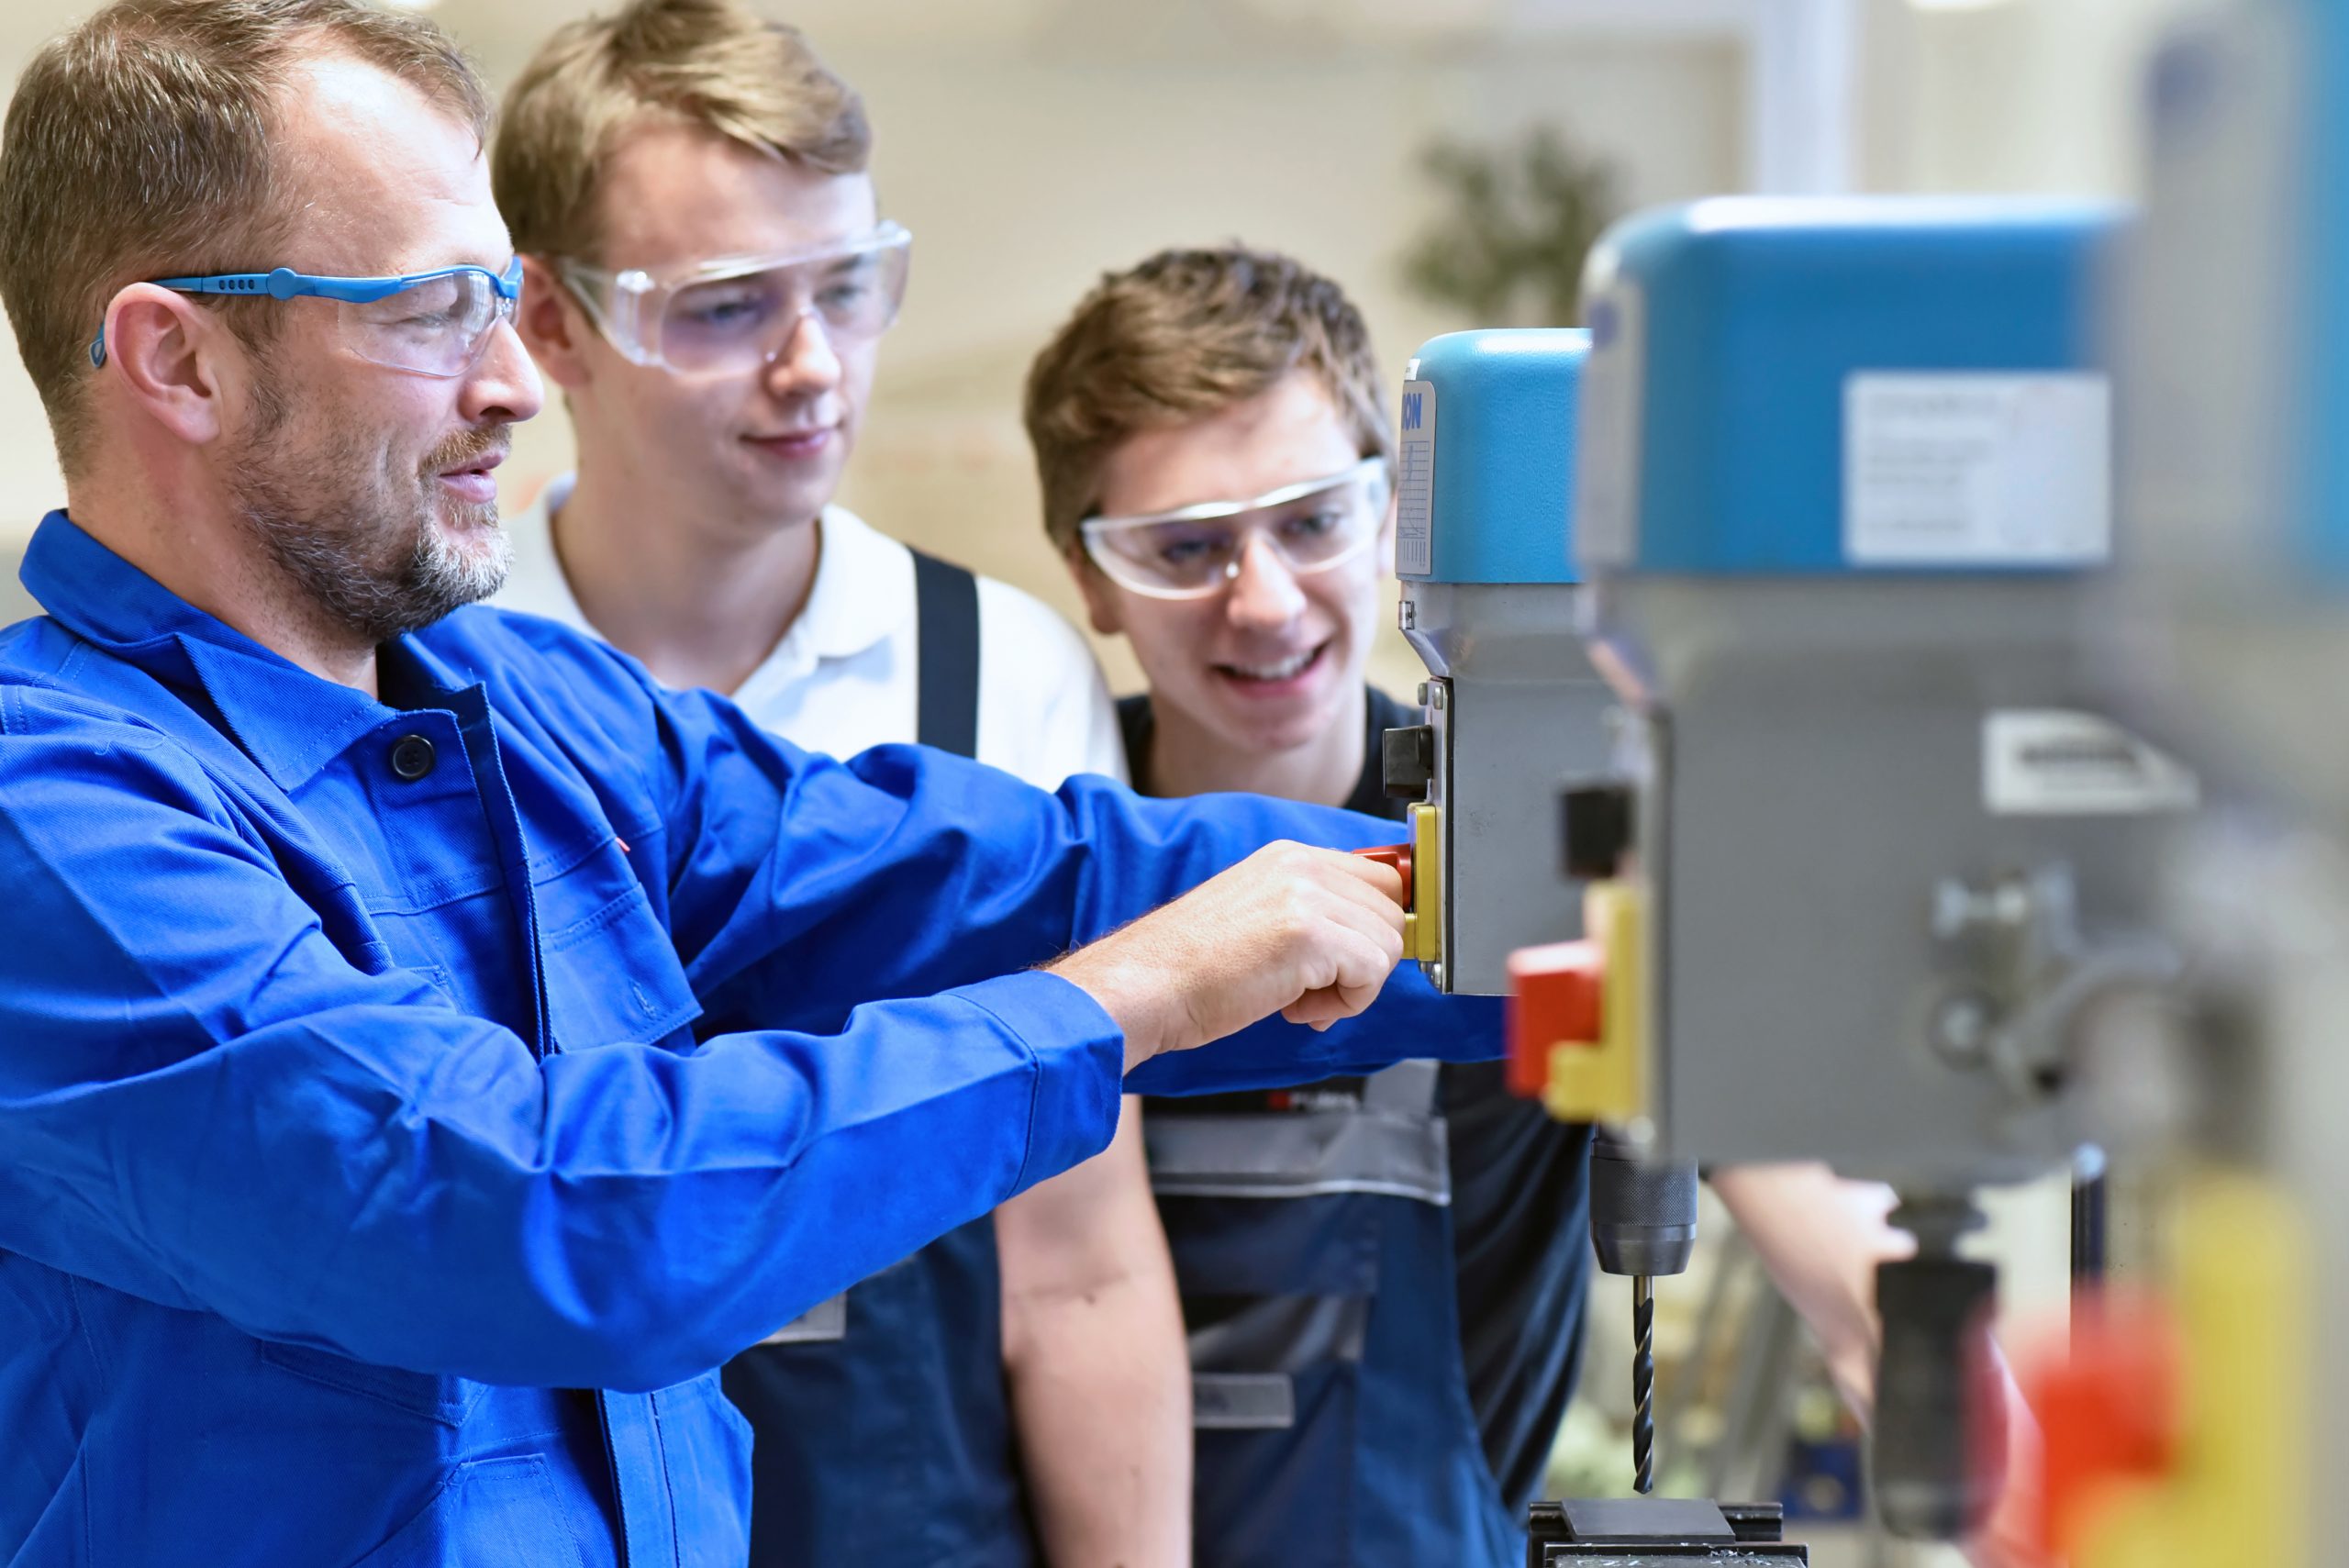 Group of young people in mechanical vocational training with teacher at drilling machine // Berufsausbildung – Jugendliche und Lehrer in der Berufsschule